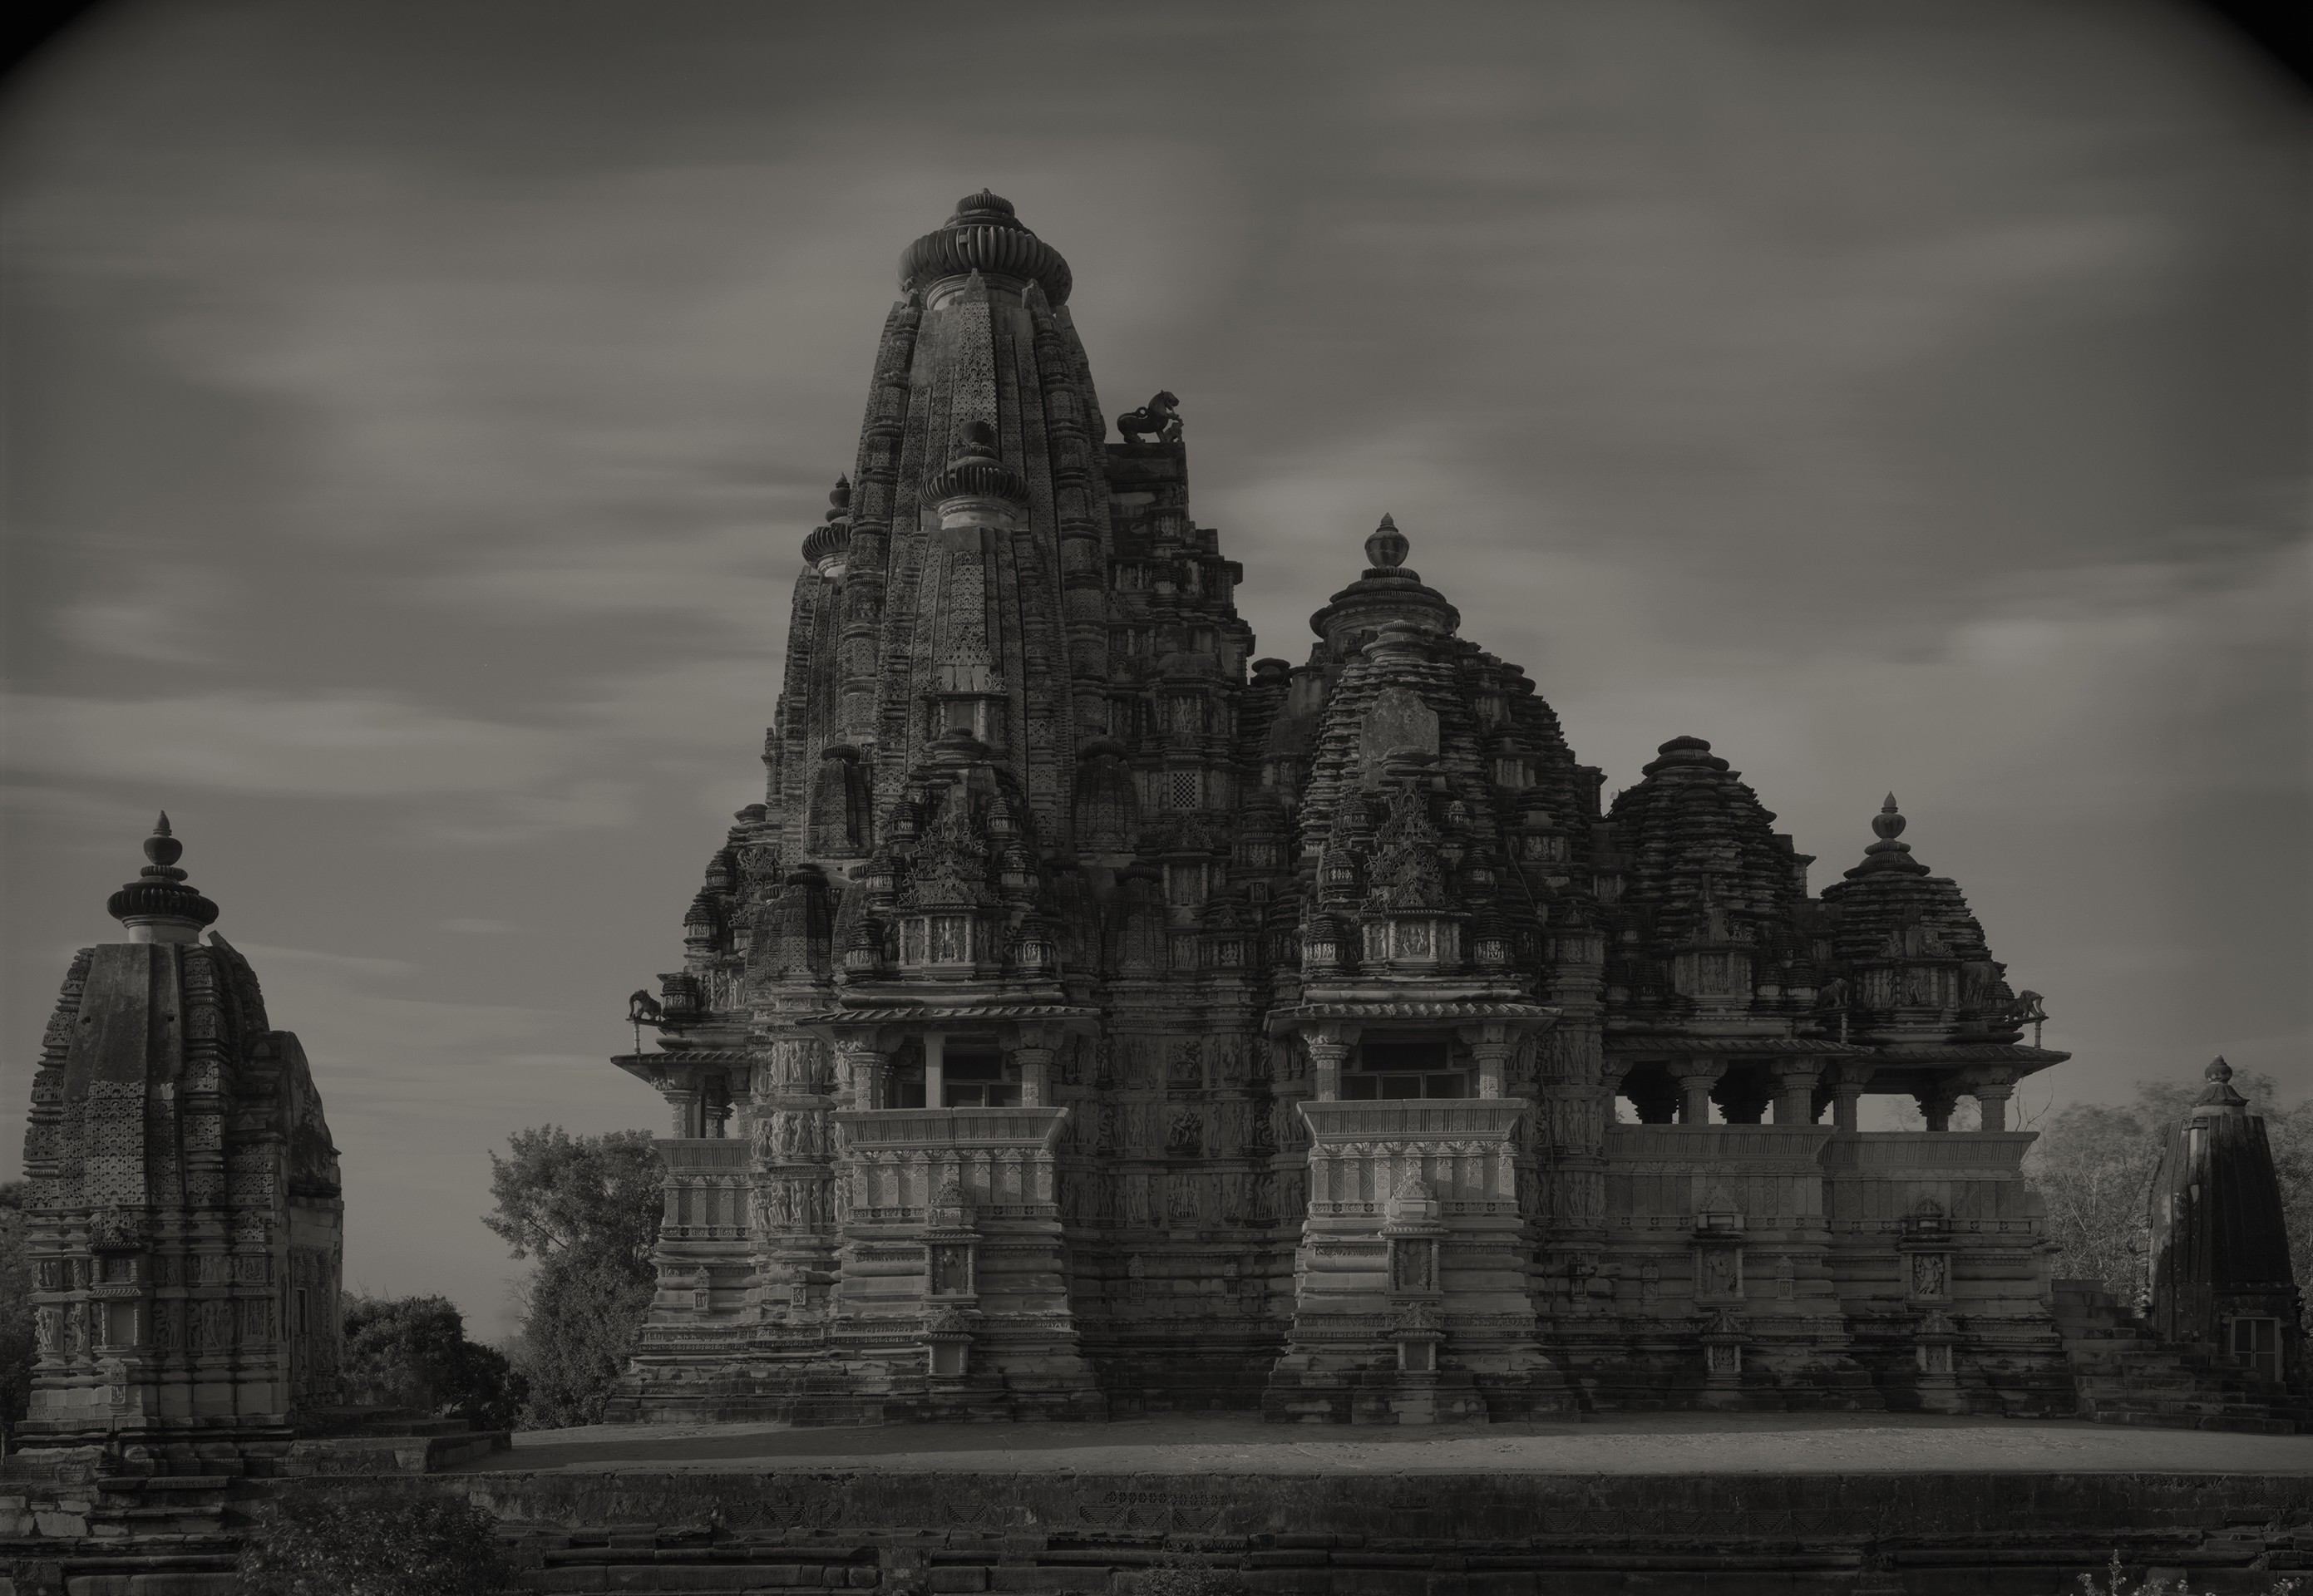 Группа храмов в Кхаджурахо, Индия, 1997. Фотограф Кенро Идзу